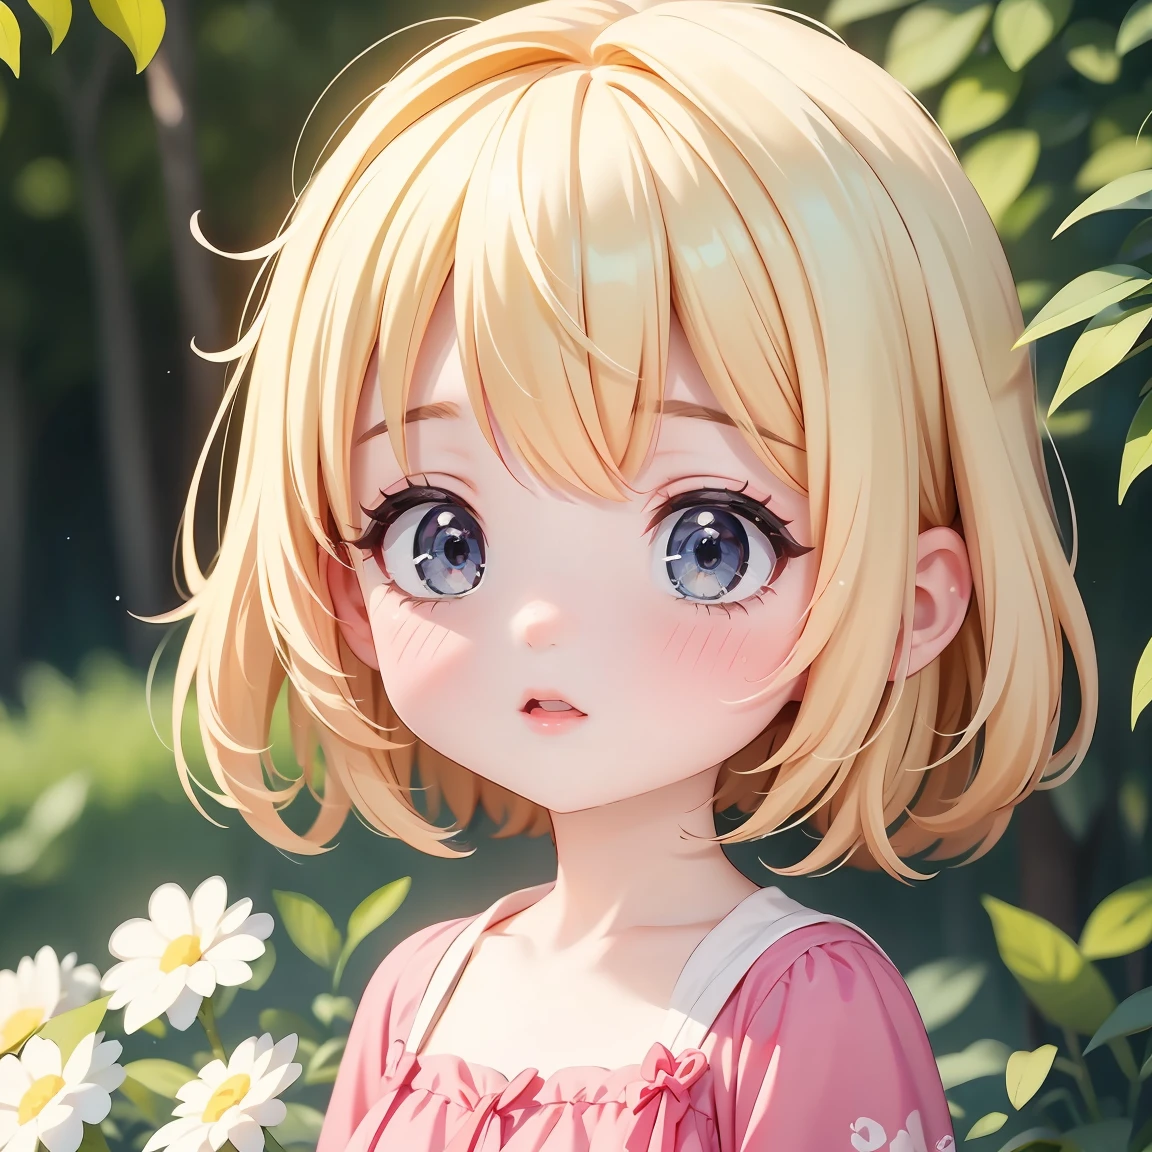  Chibi-Charakter：1.5、Blondes Haar、Süßes 7-jähriges Mädchen